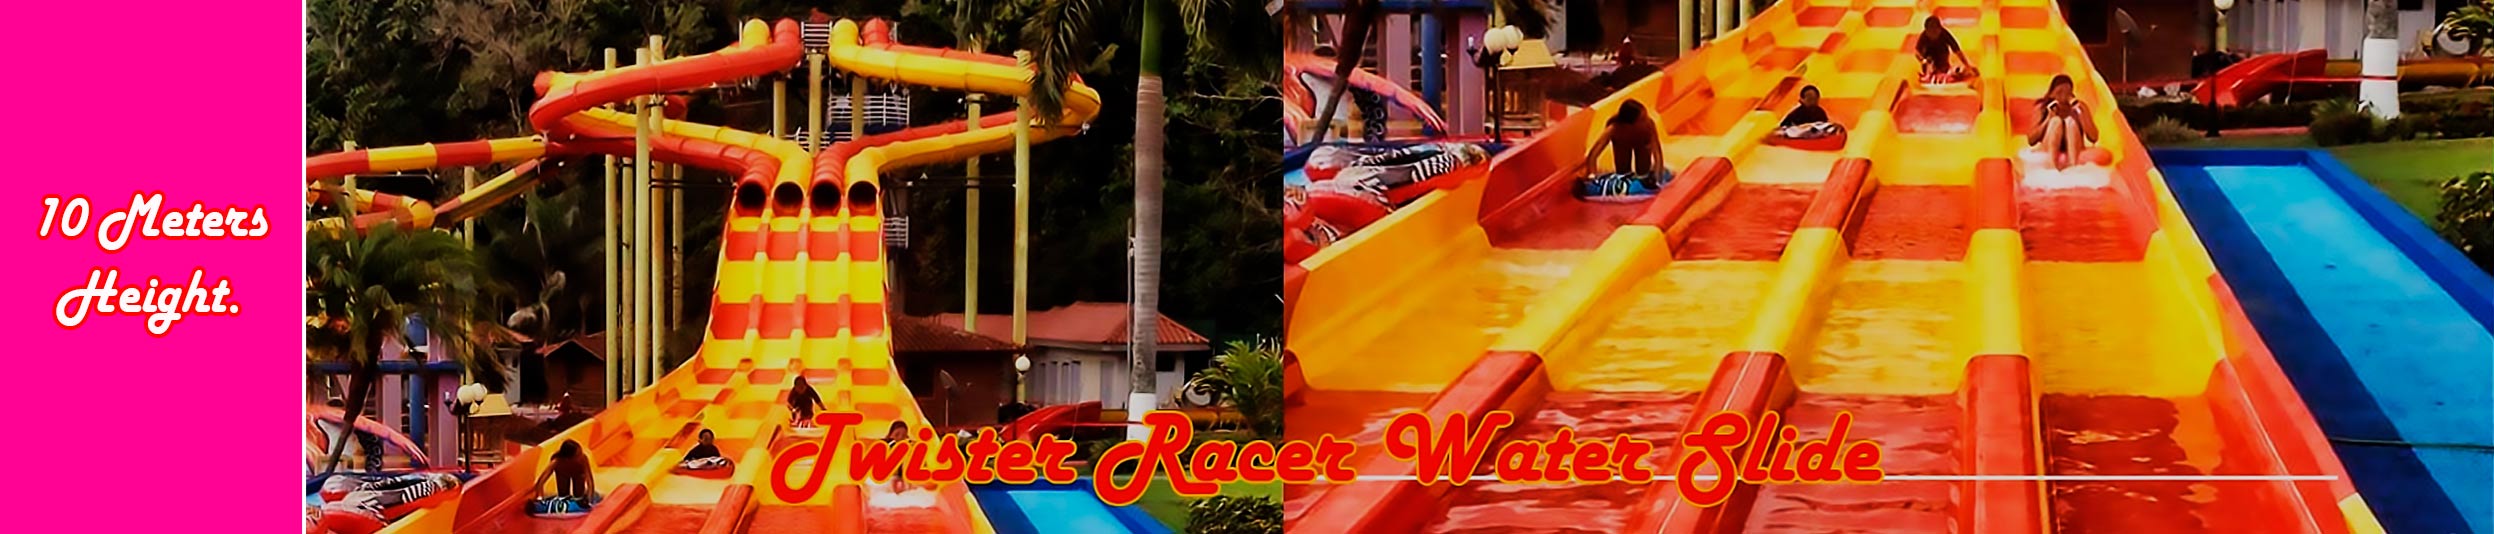 twister race water slide 4